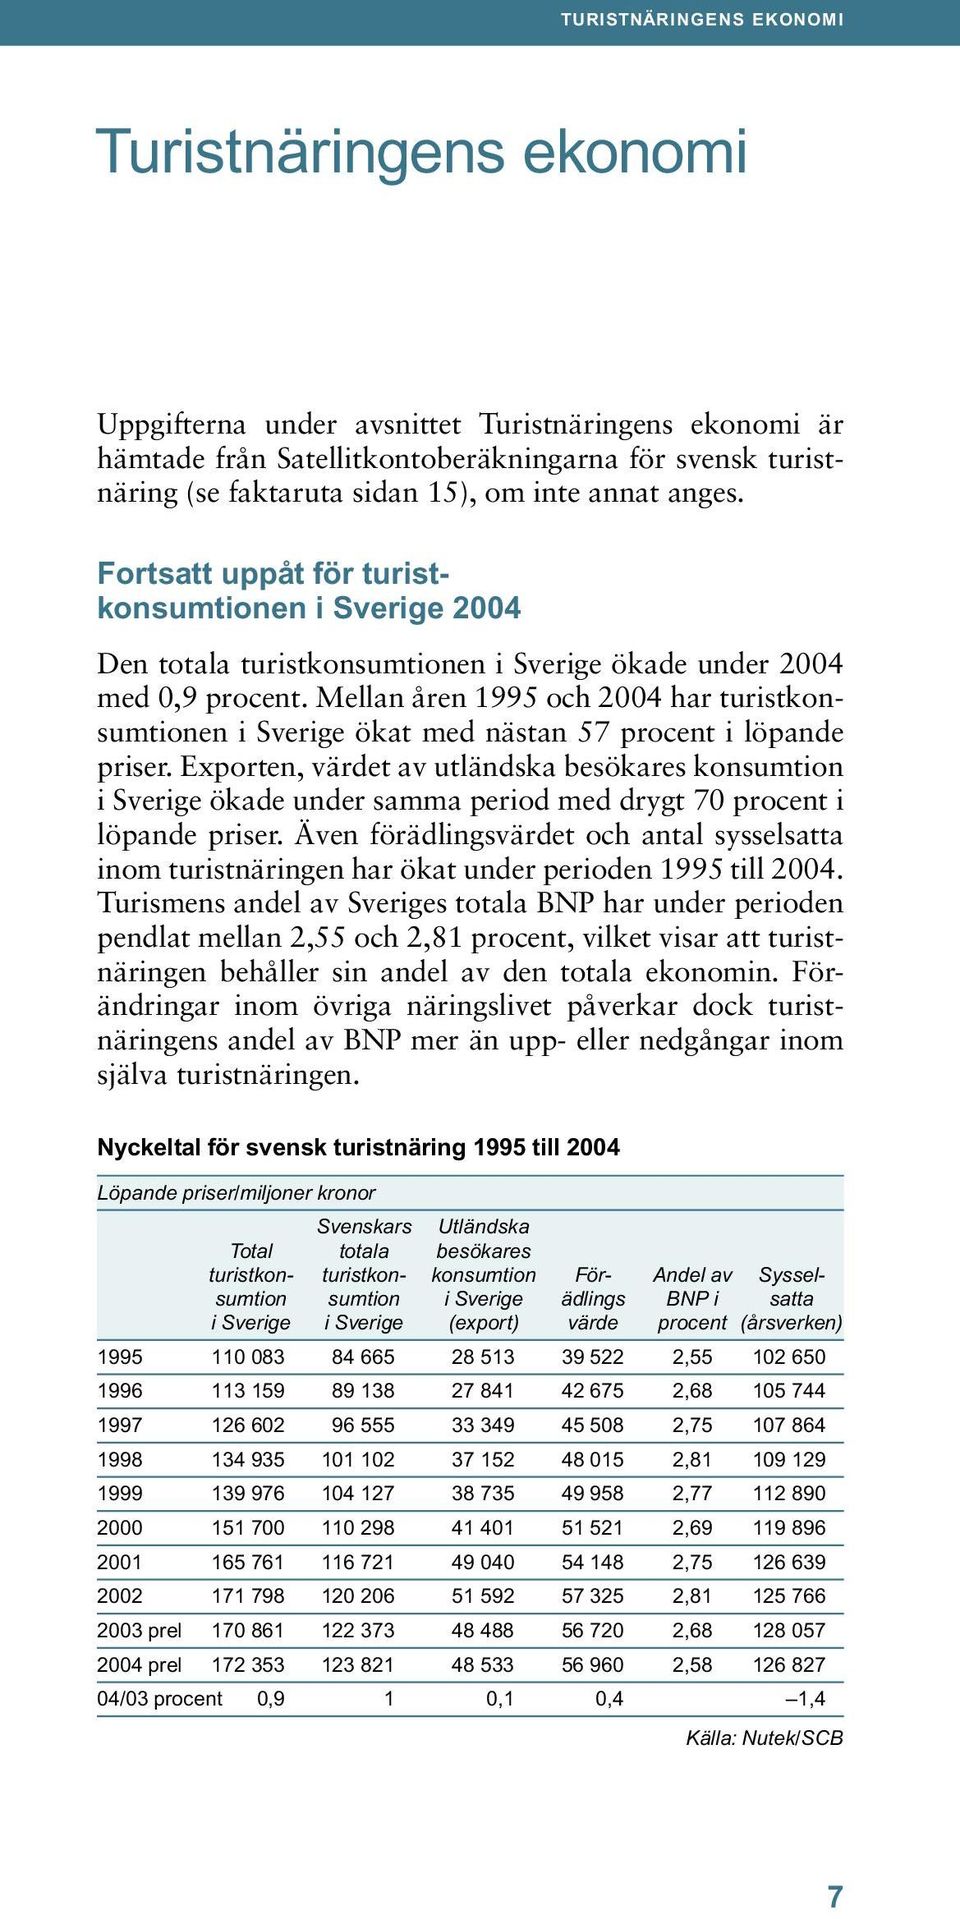 Mellan åren 1995 och 2004 har turistkonsumtionen i Sverige ökat med nästan 57 procent i löpande priser.